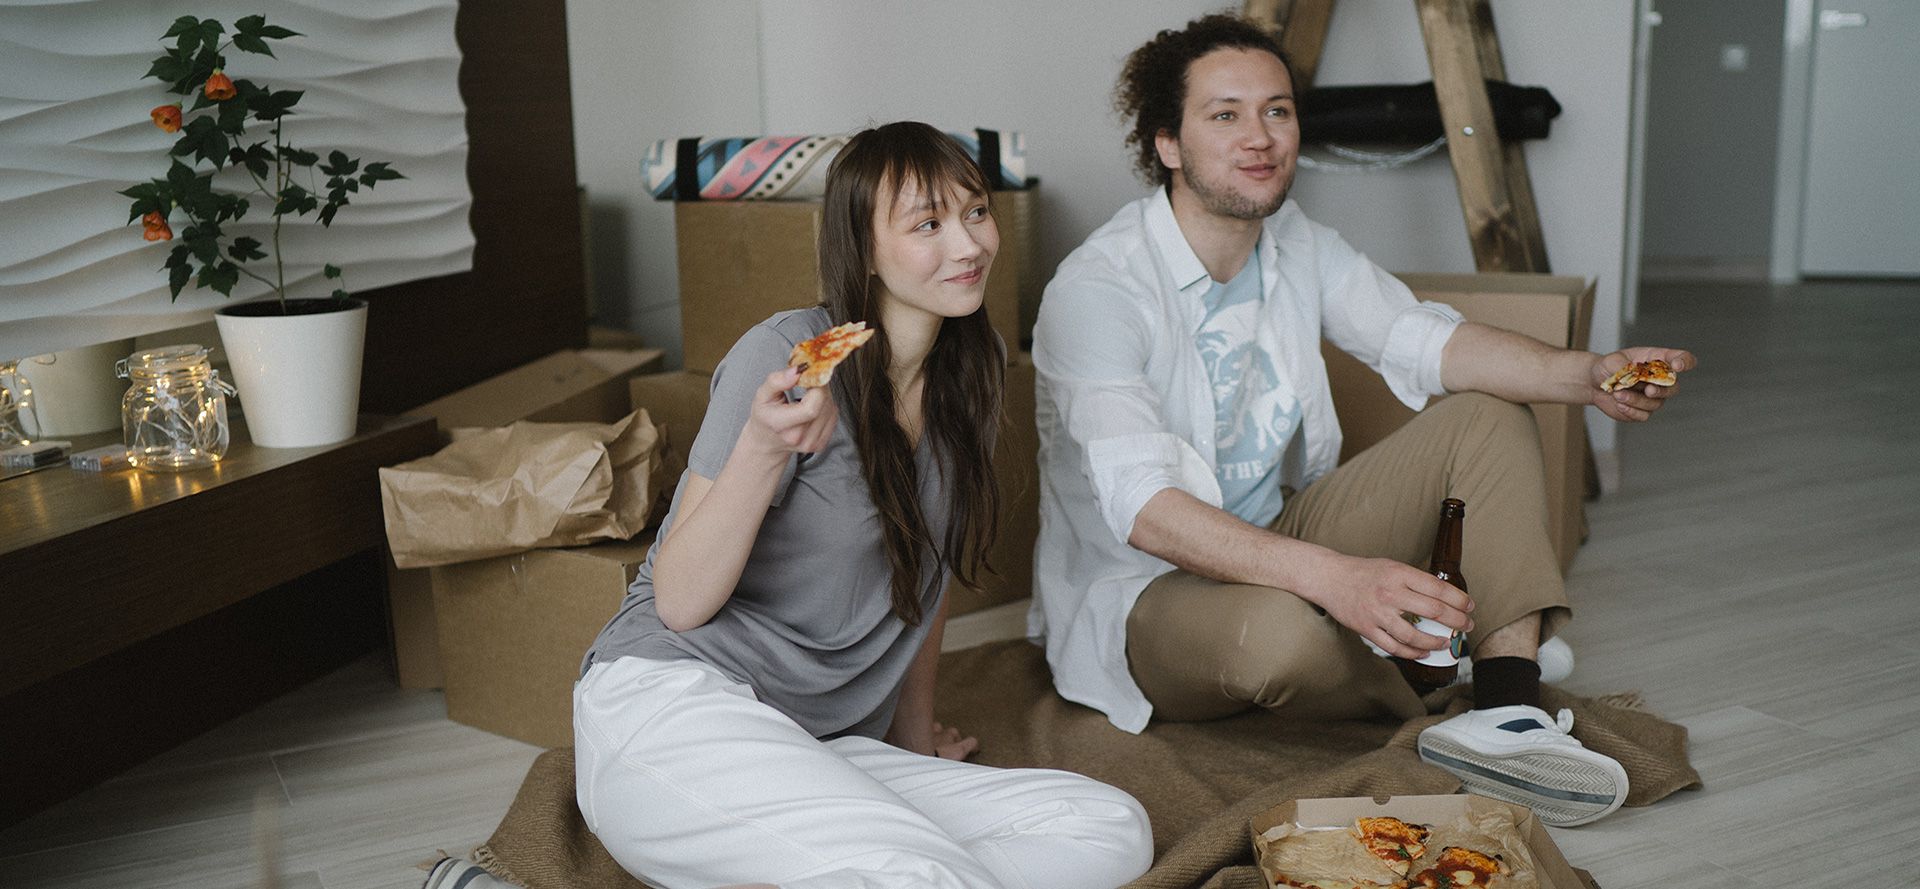 Pizza de casal em um encontro.